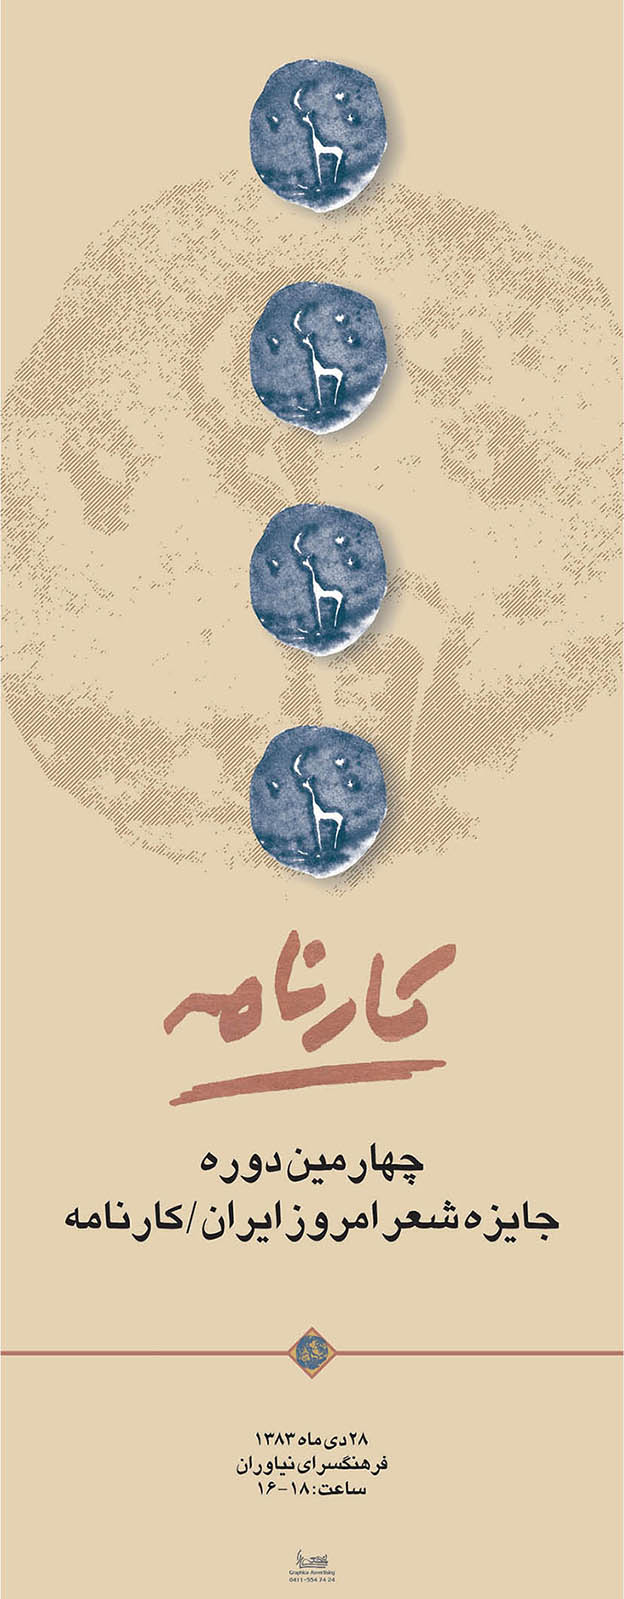 طراحی پوستر چهارمین دوره جایزه شعر امروز ایران . کارنامه 1383